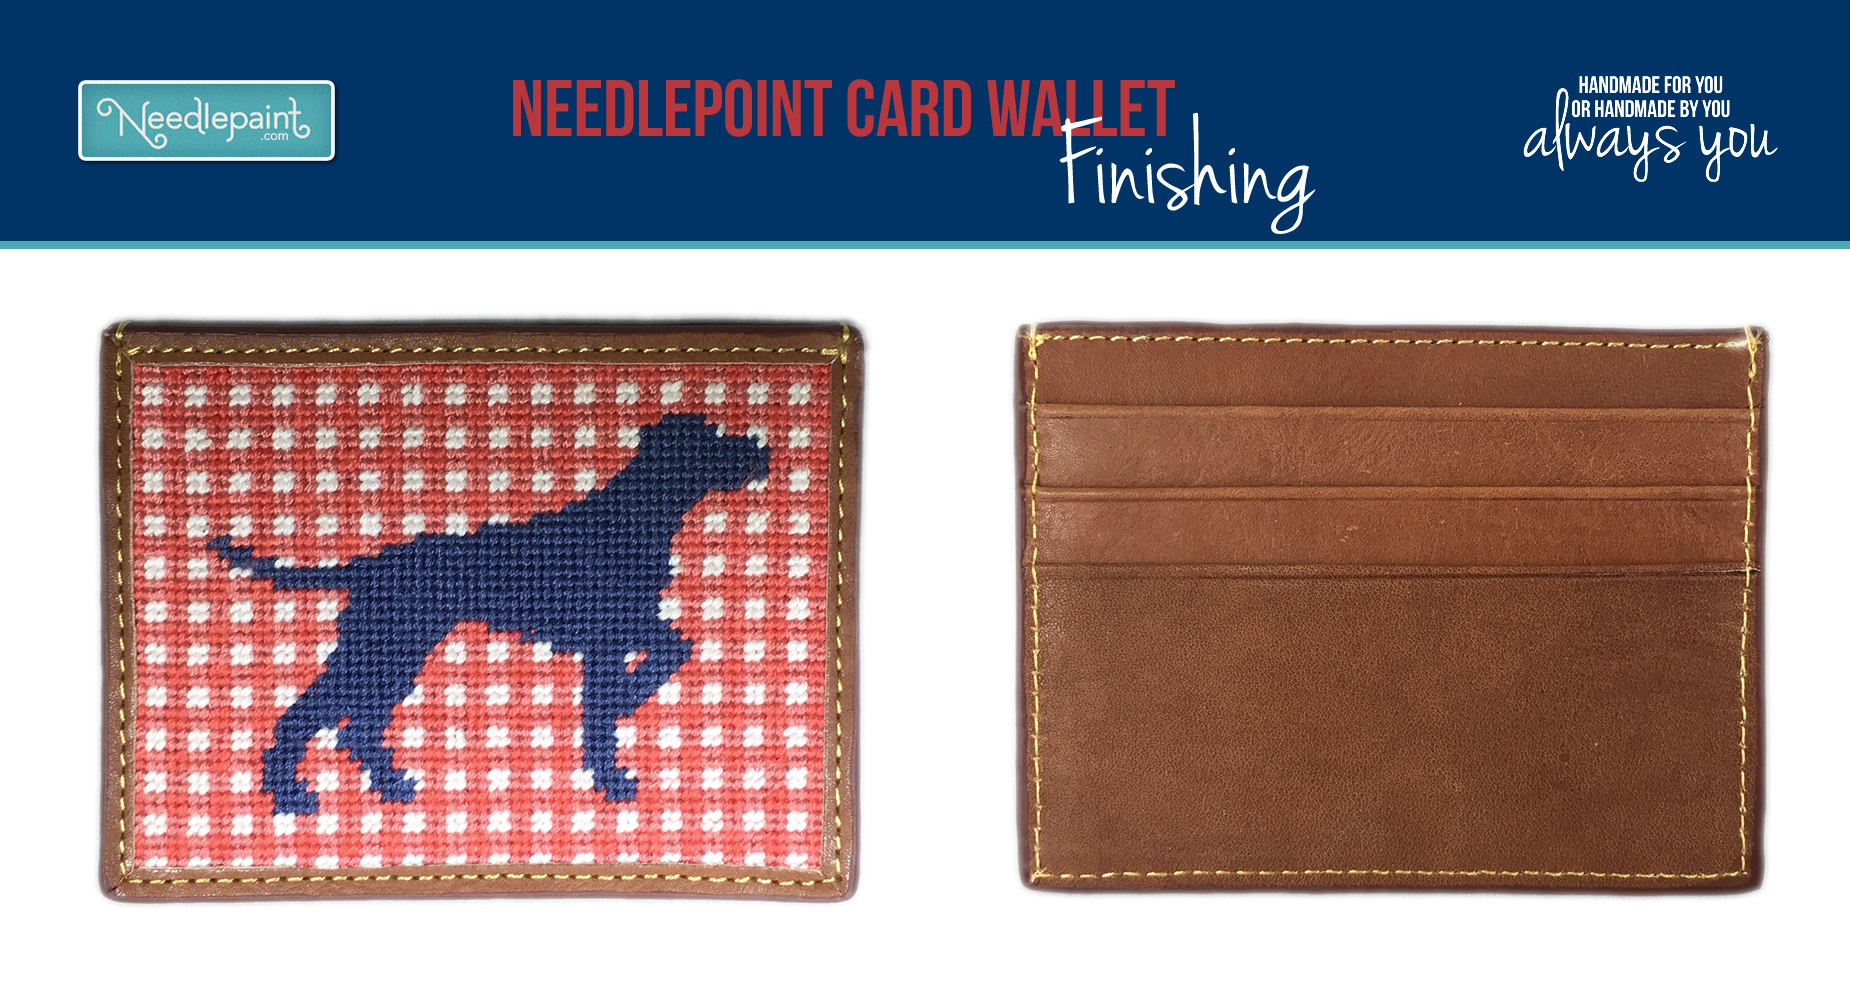 Needlepoint Card Wallet Finishing